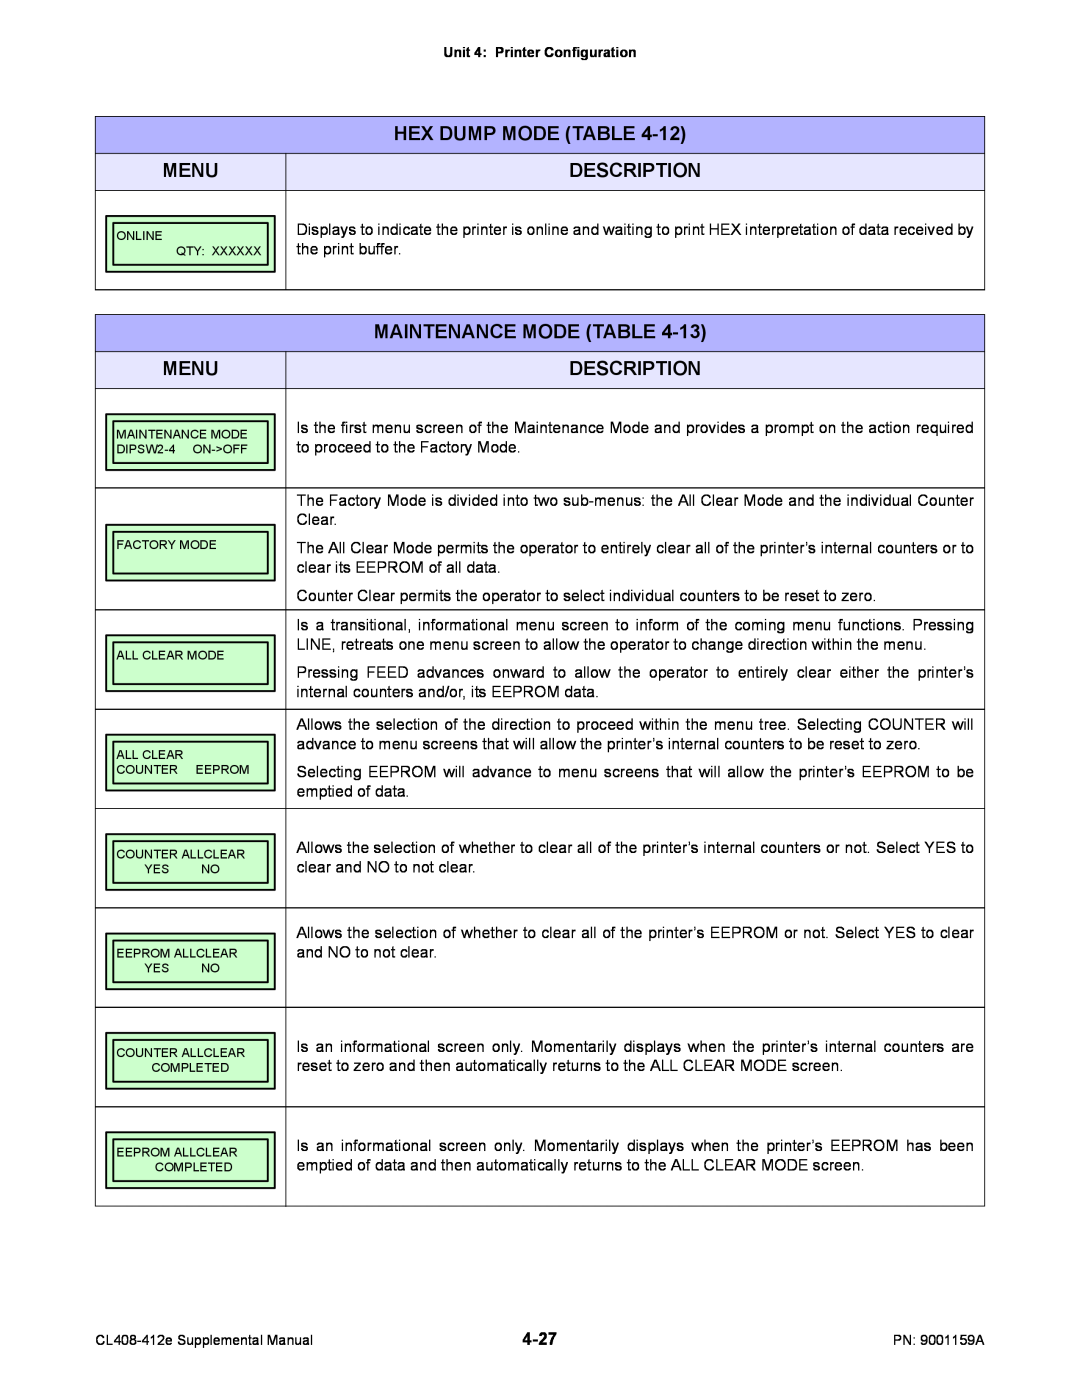 SATO CL408-412e manual Description, Hex Dump Mode Table, Menu, Maintenance Mode Table 